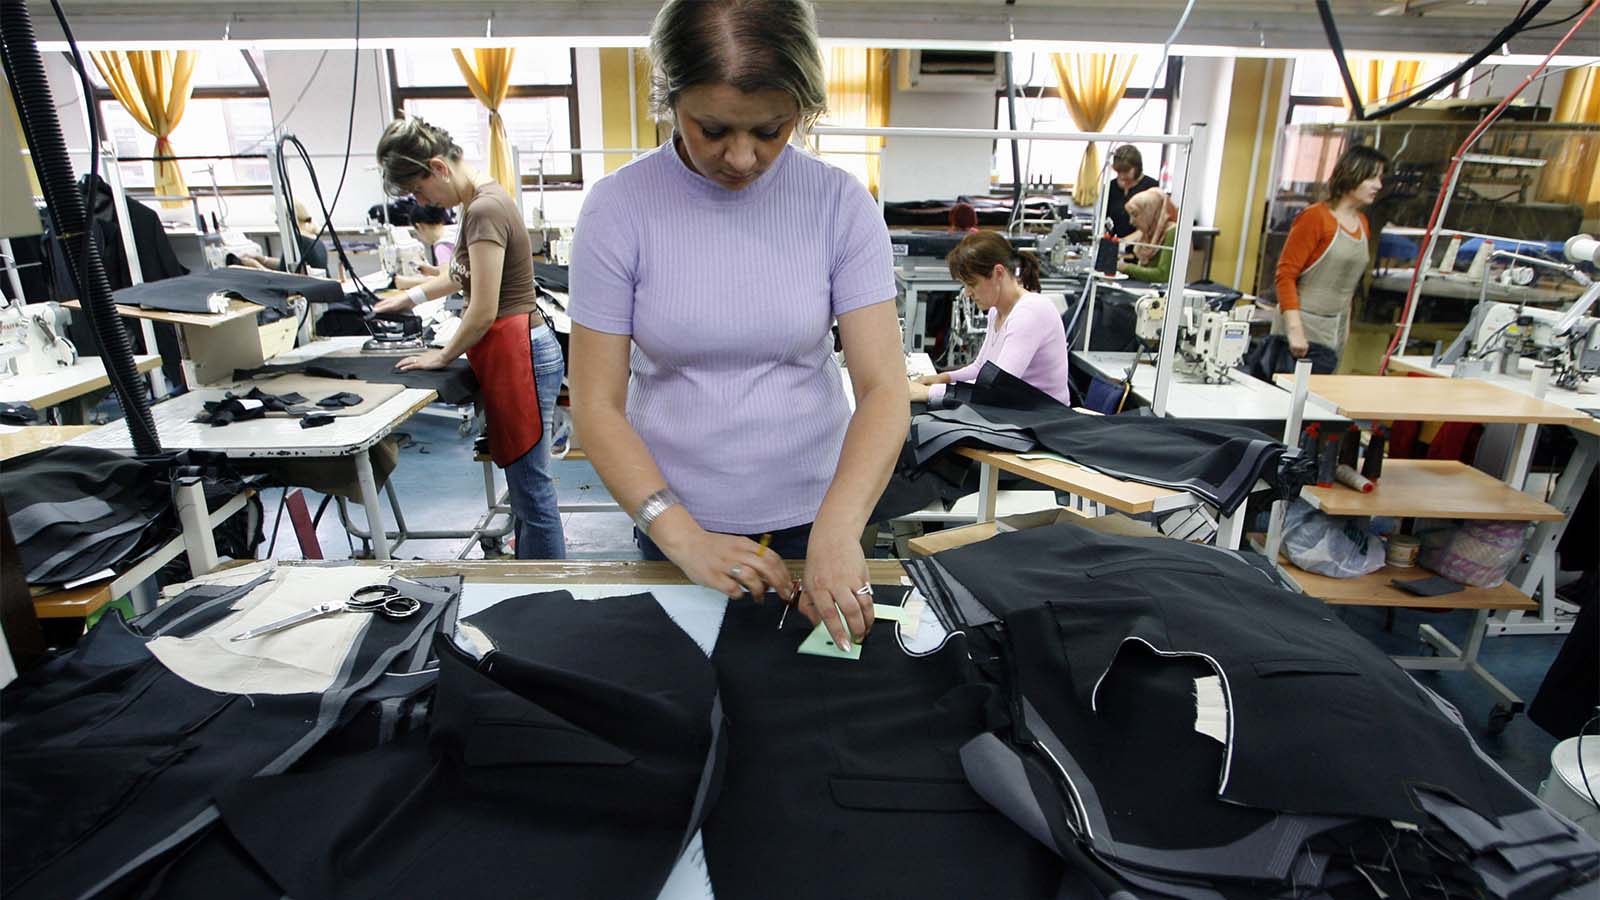 תופרת במפעל לייצור בגדים לאופנה עילית בבלקן. צילום ארכיון, למצולמת אין קשר לכתבה (צילום: REUTERS/Danilo Krstanovic)